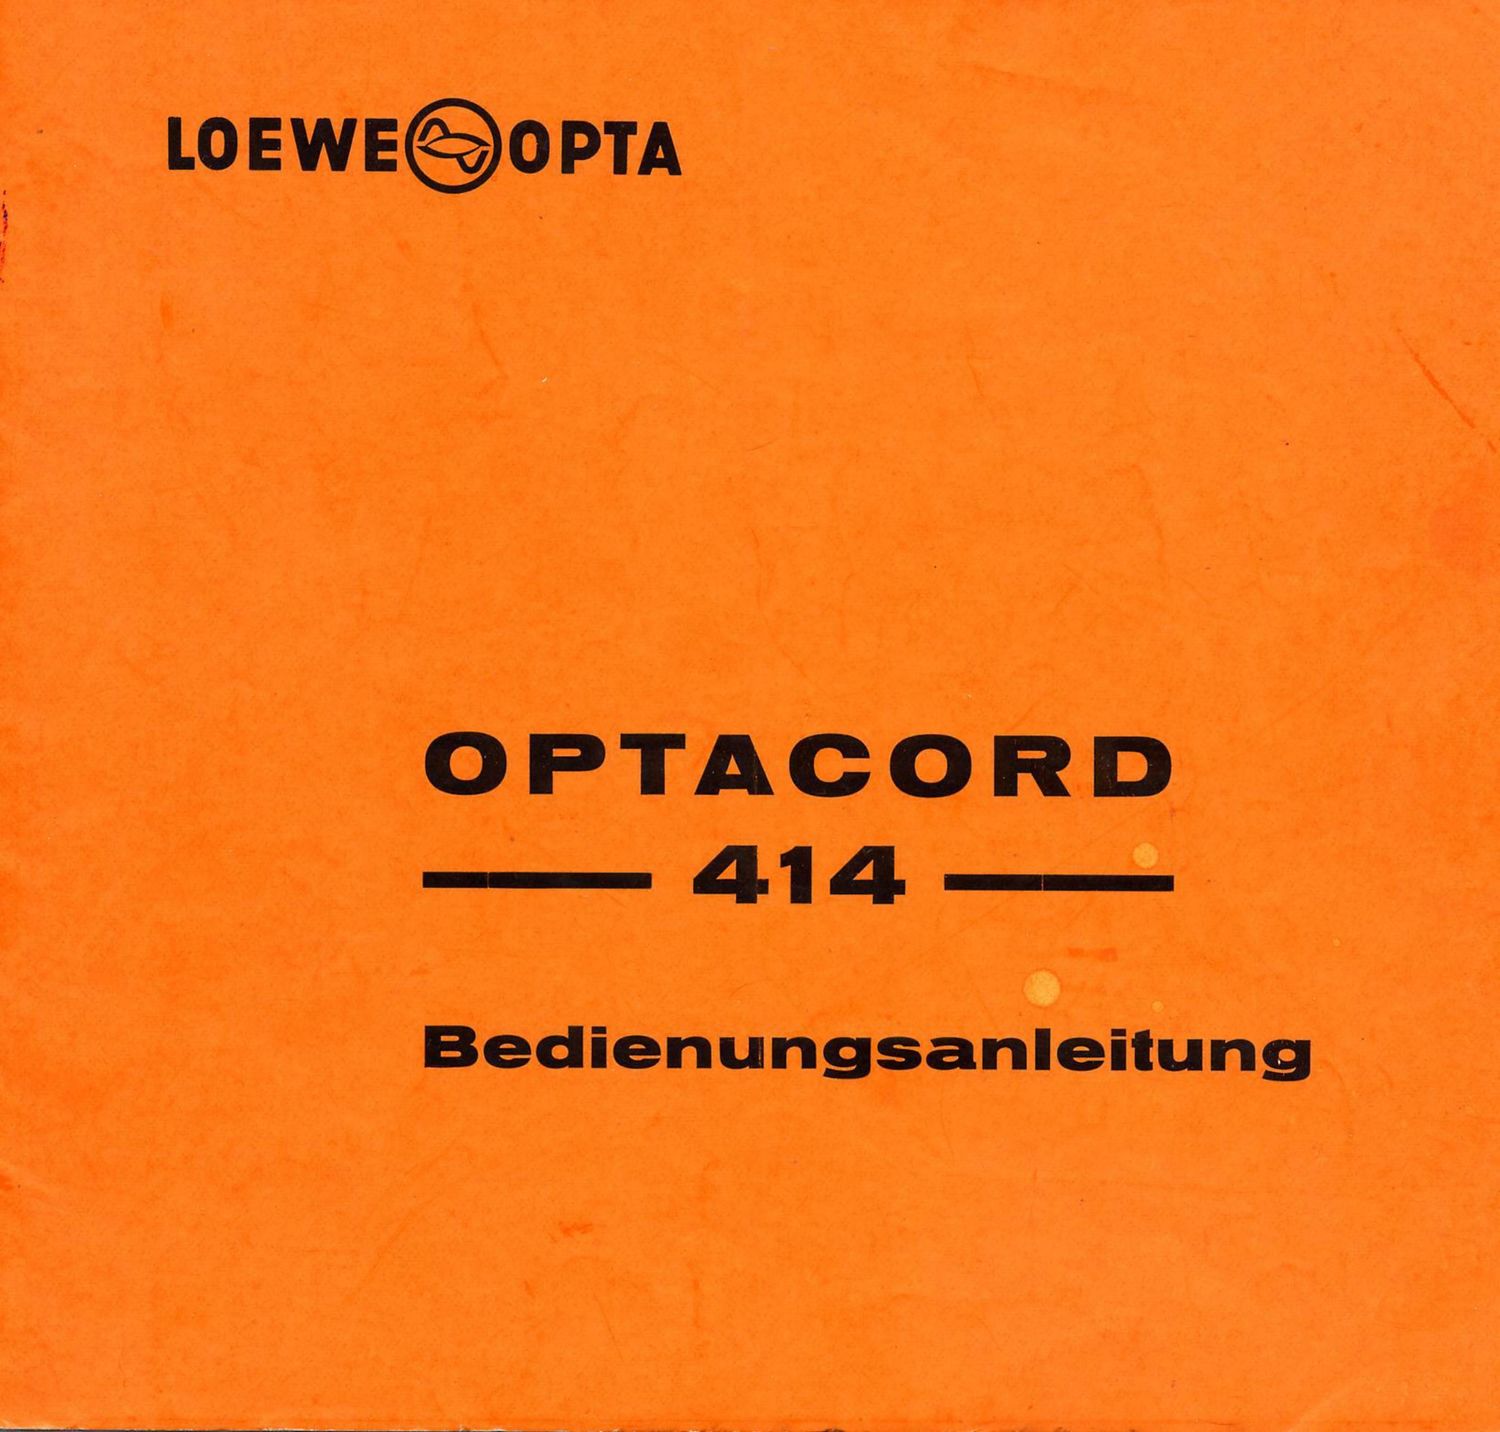 loewe optacord 414 bedienungsanleitung